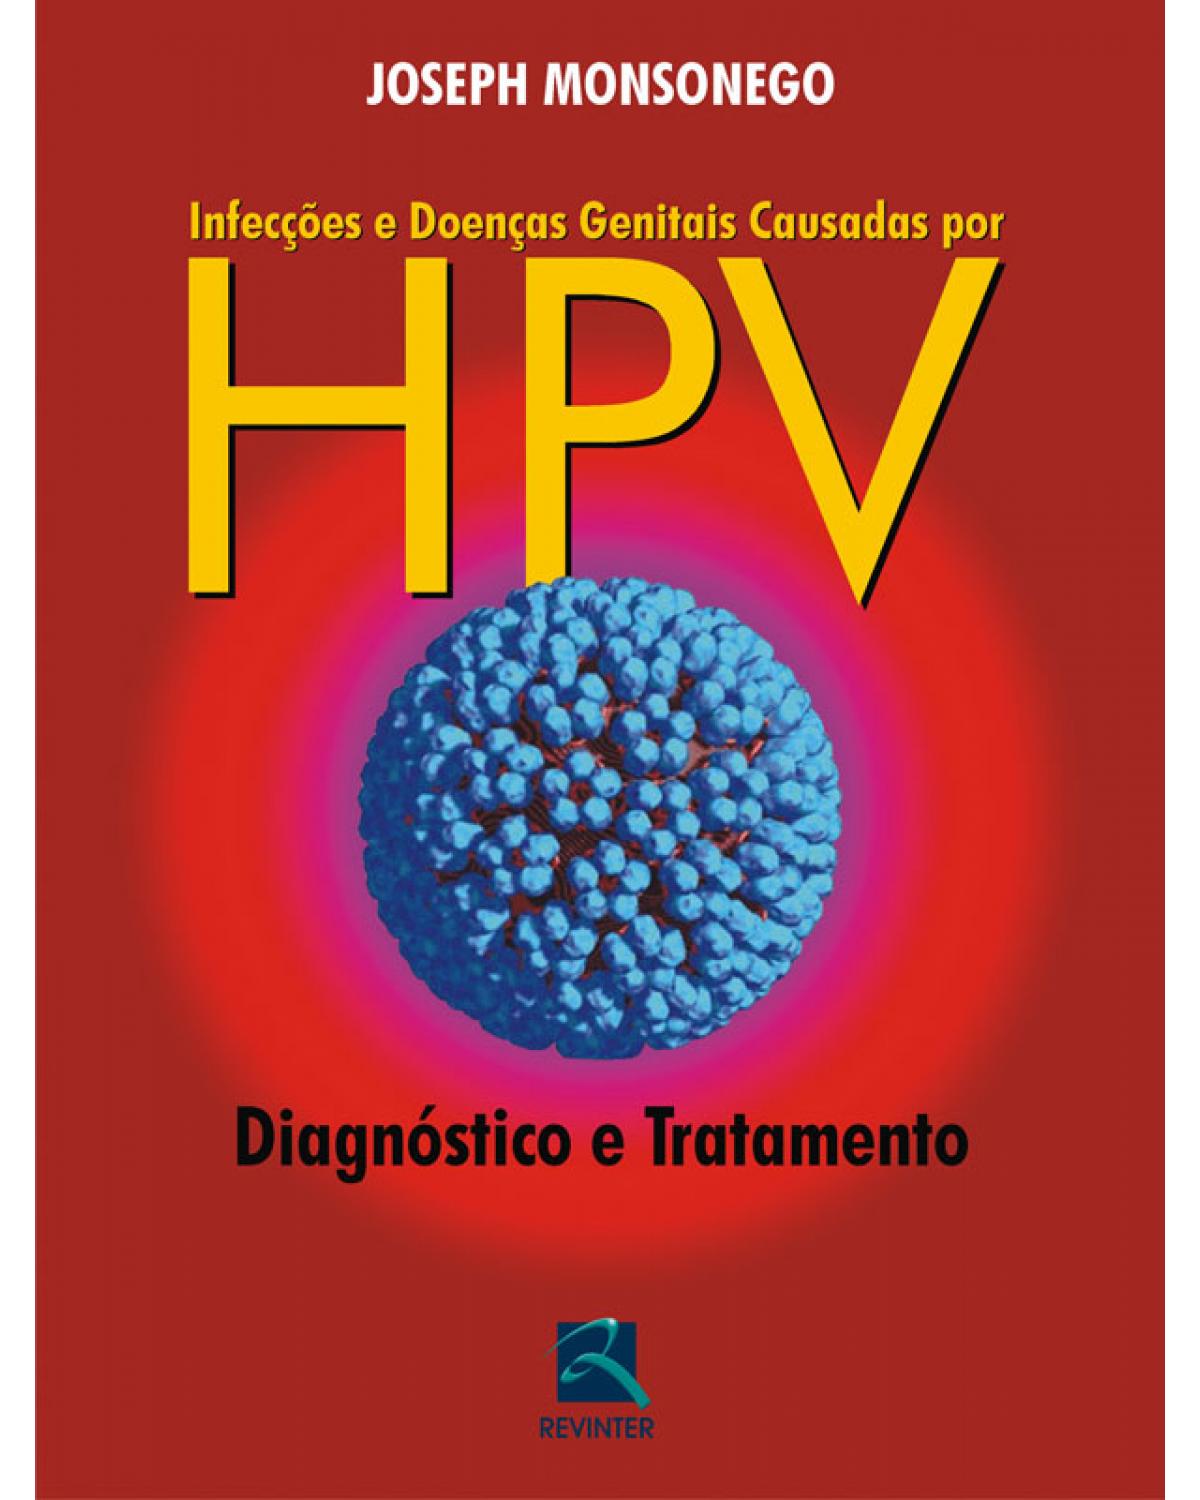 Infecções e doenças genitais causadas por HPV - diagnóstico e tratamento - 1ª Edição | 2010